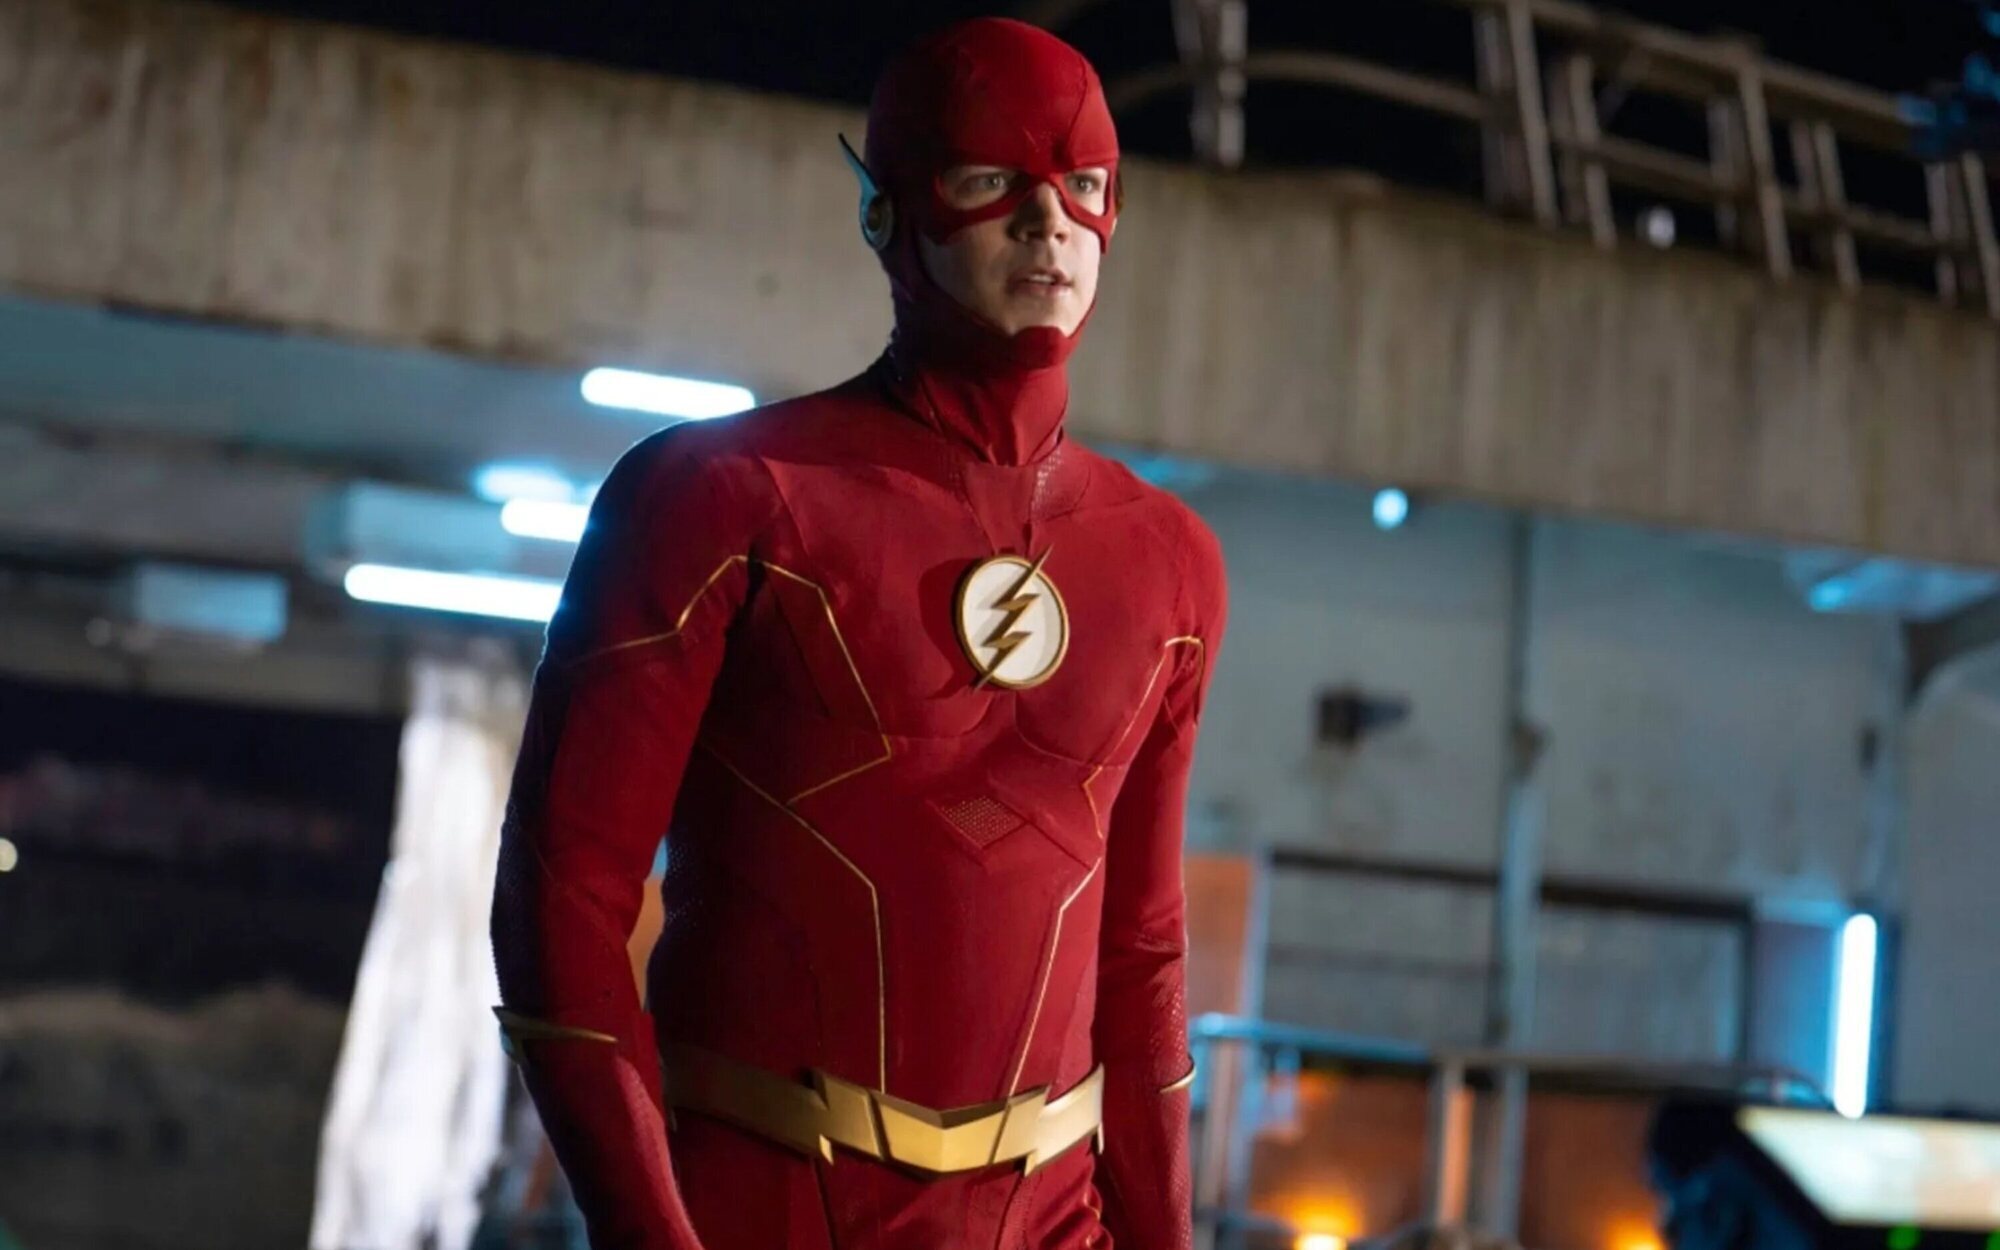 'The Flash' llegará a su fin con su novena temporada